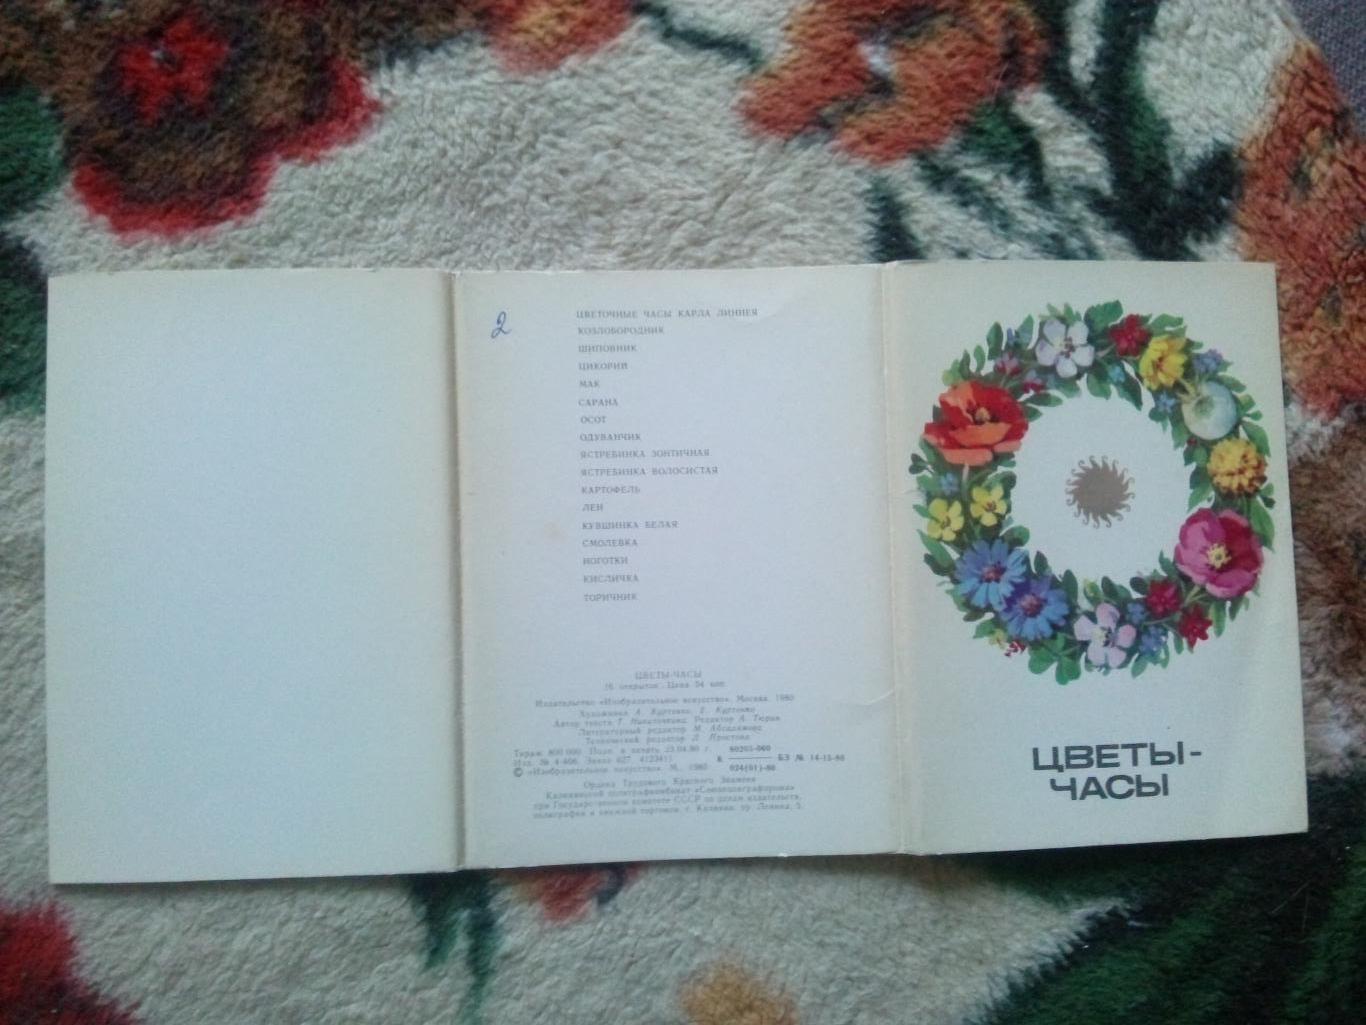 Цветы - часы 1980 г. полный набор - 16 открыток (чистые , в идеале) Растения 1